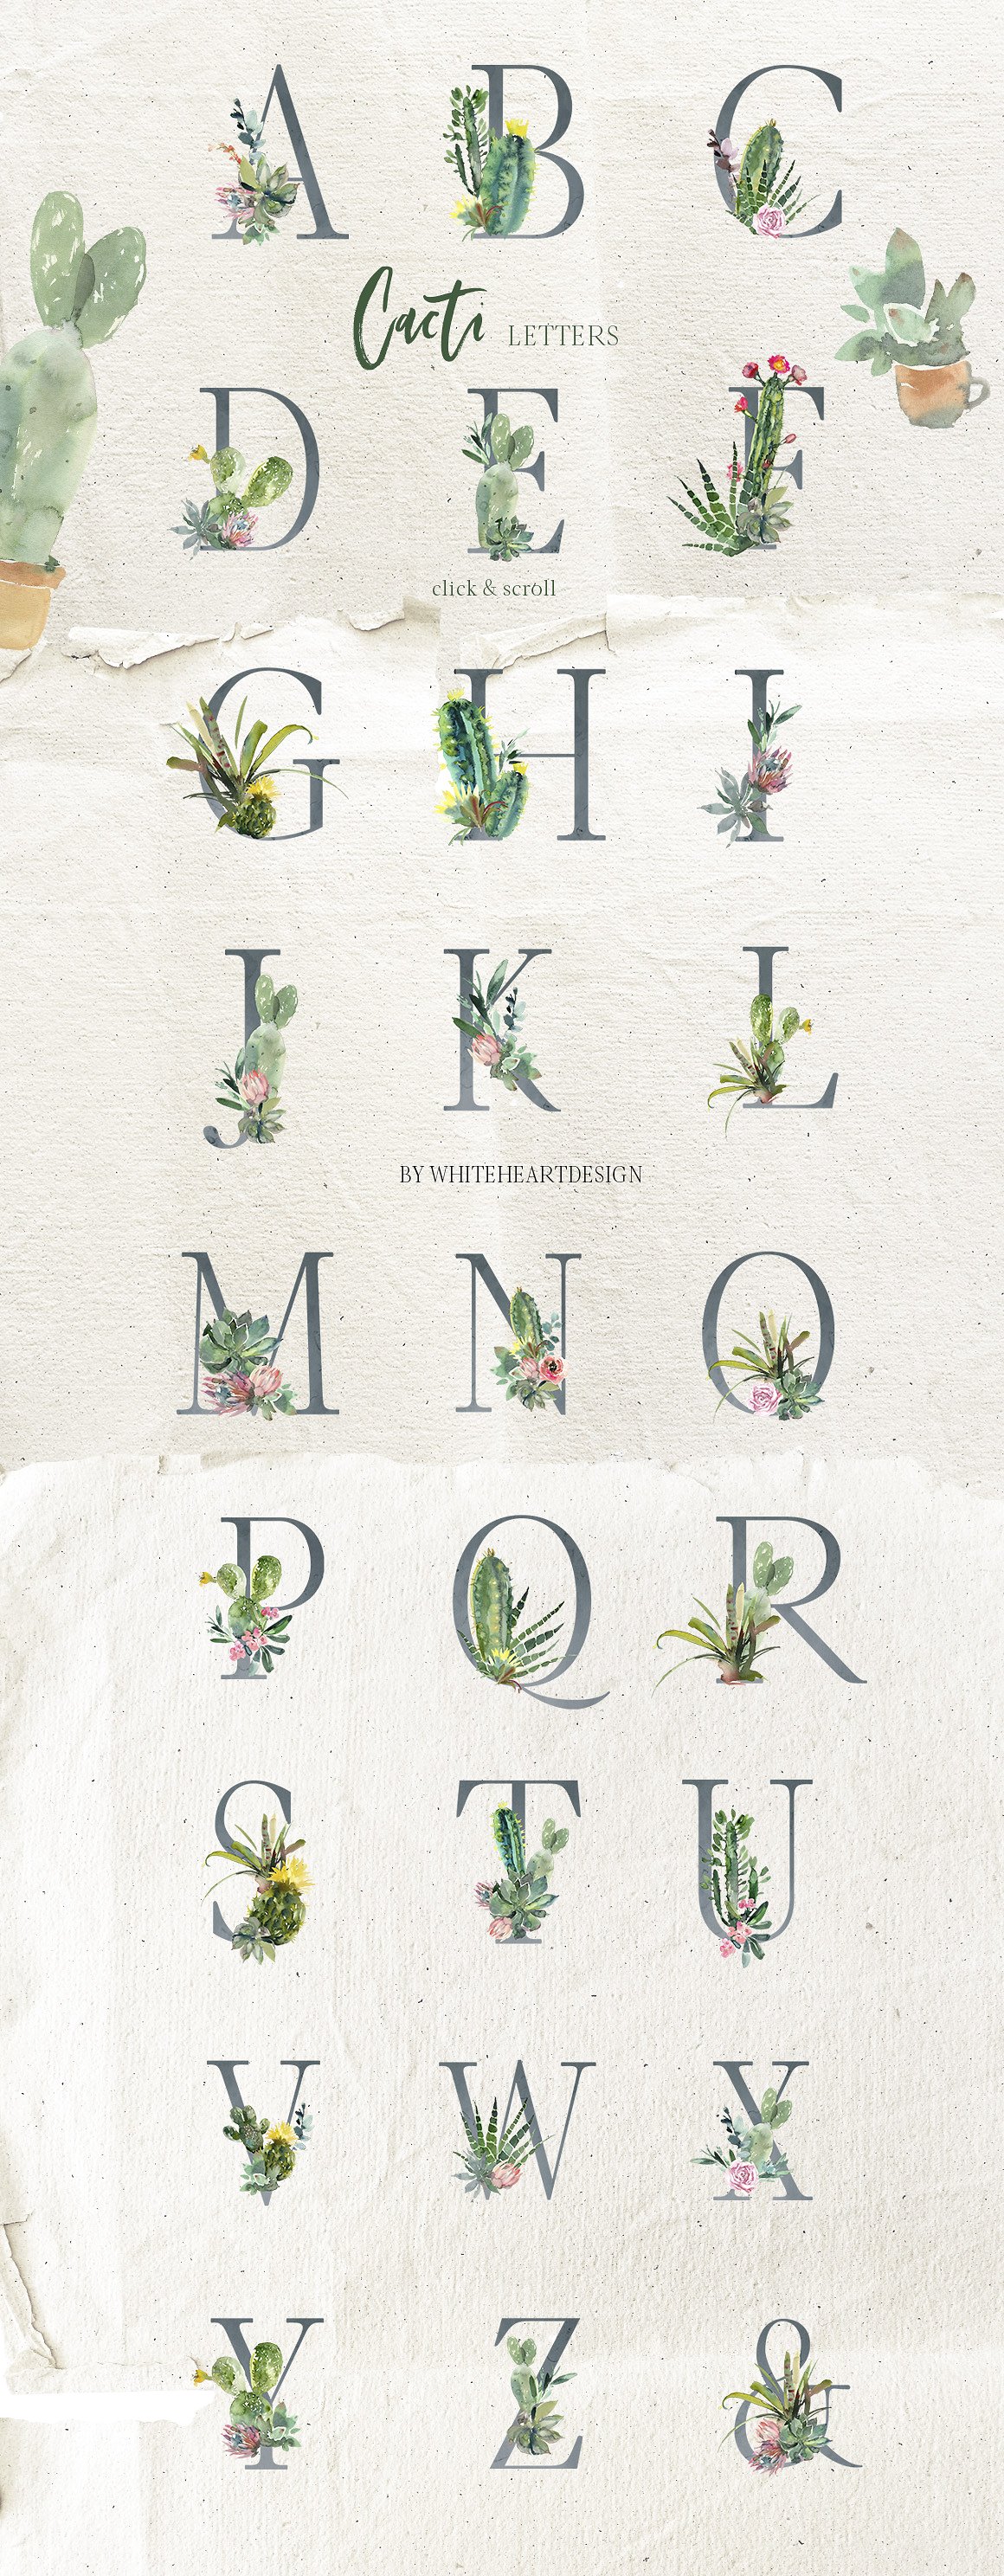 仙人掌水彩剪贴画 Cacti Watercolor Cactuses Clipart插图(4)